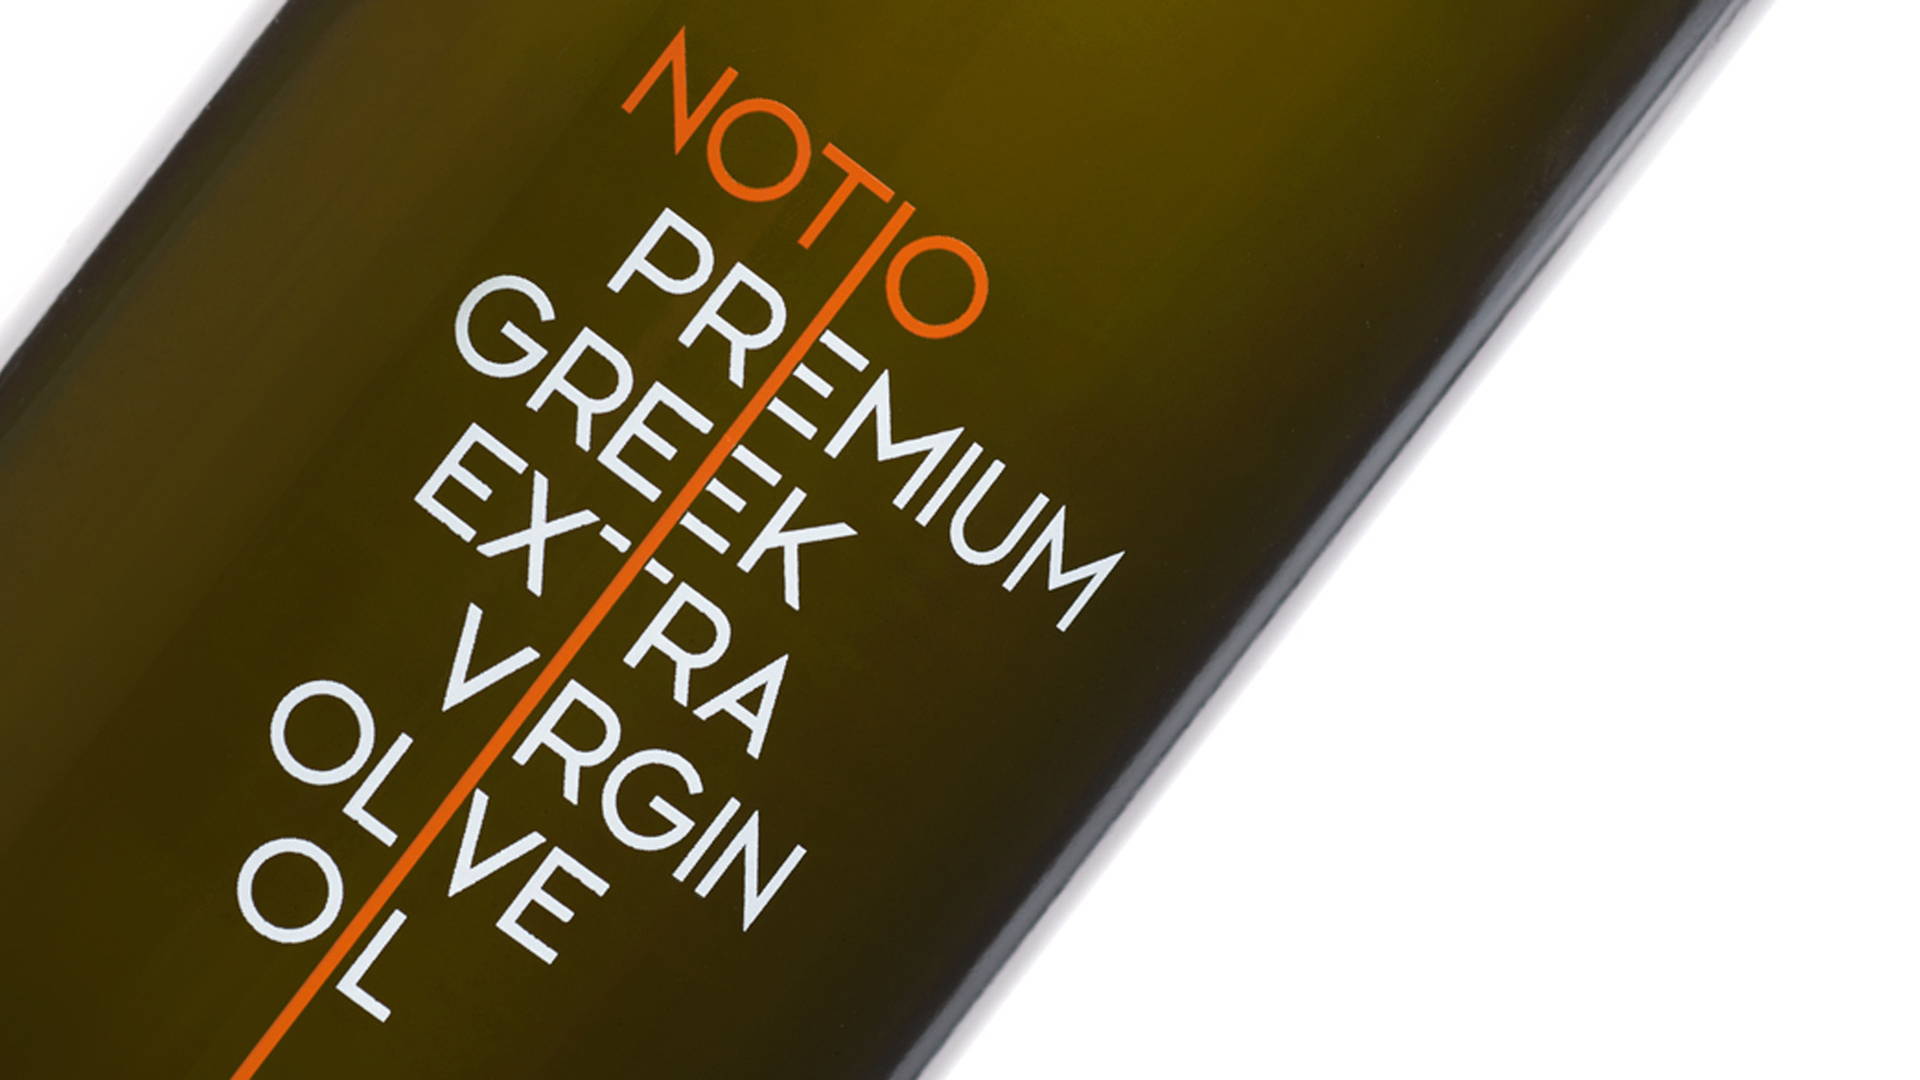 Featured image for Notio Premium Extra Virgin Olive Oil